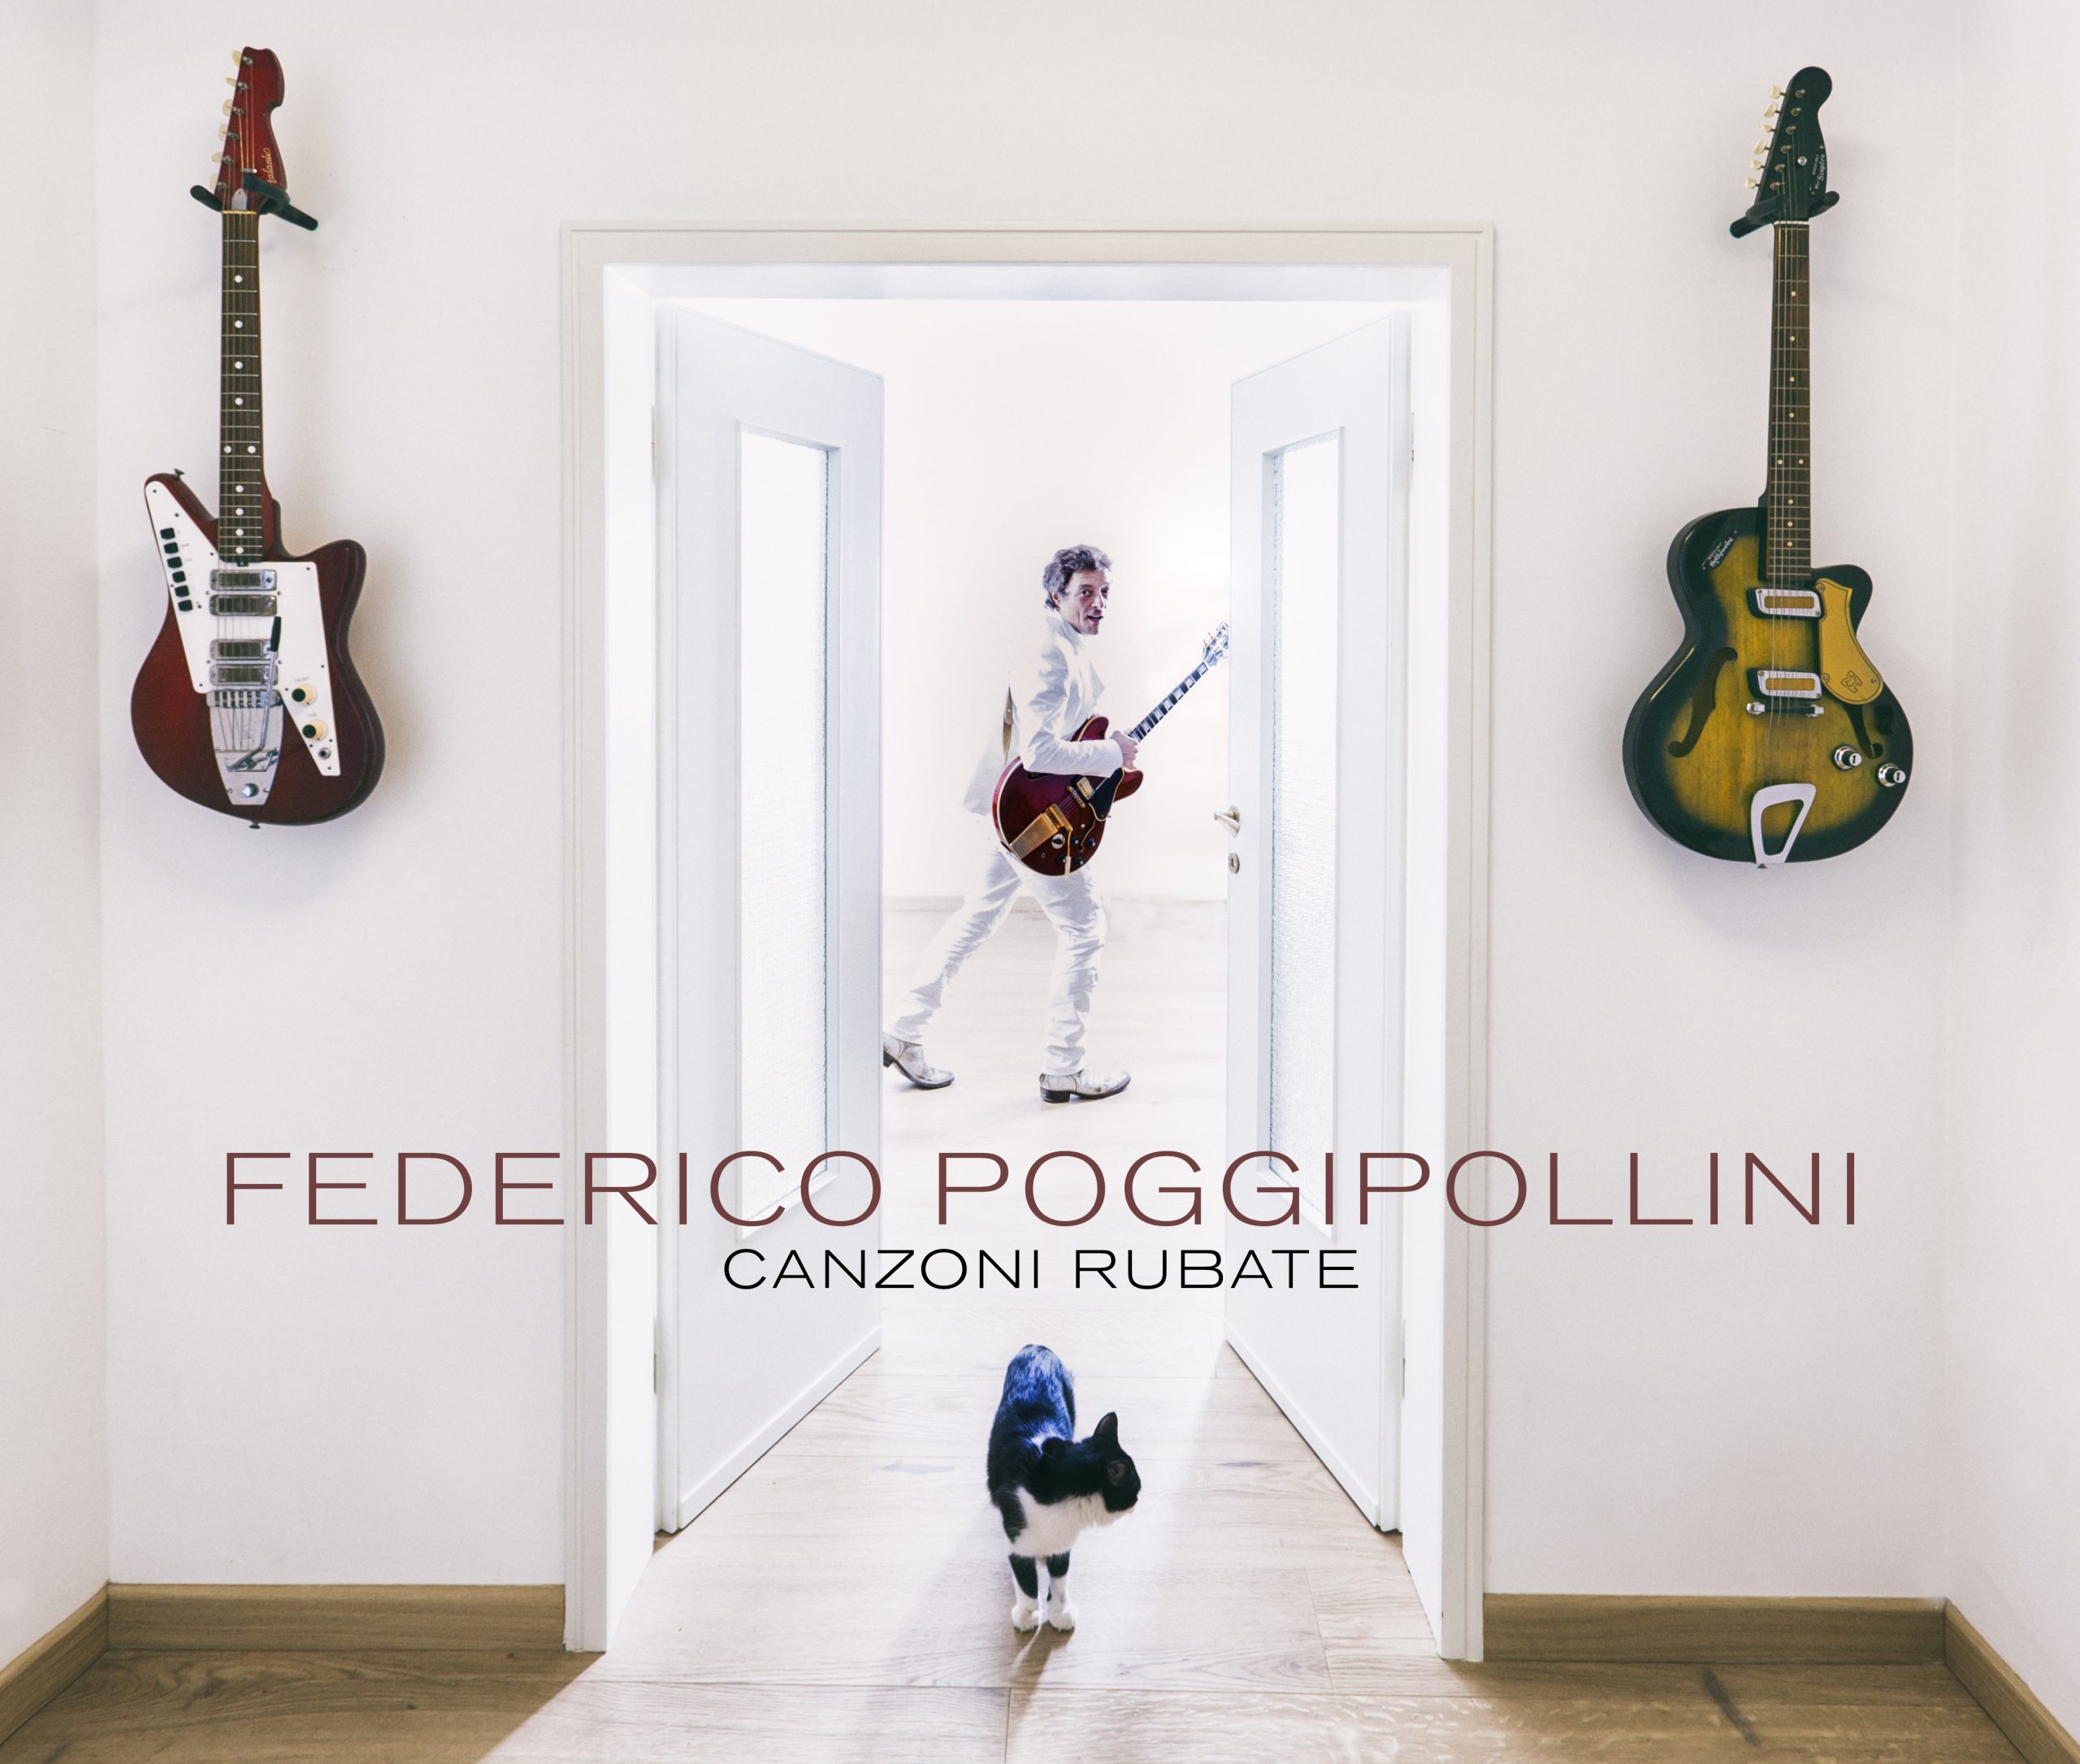 Fuori “Canzoni rubate” il nuovo album di Federico Poggipollini